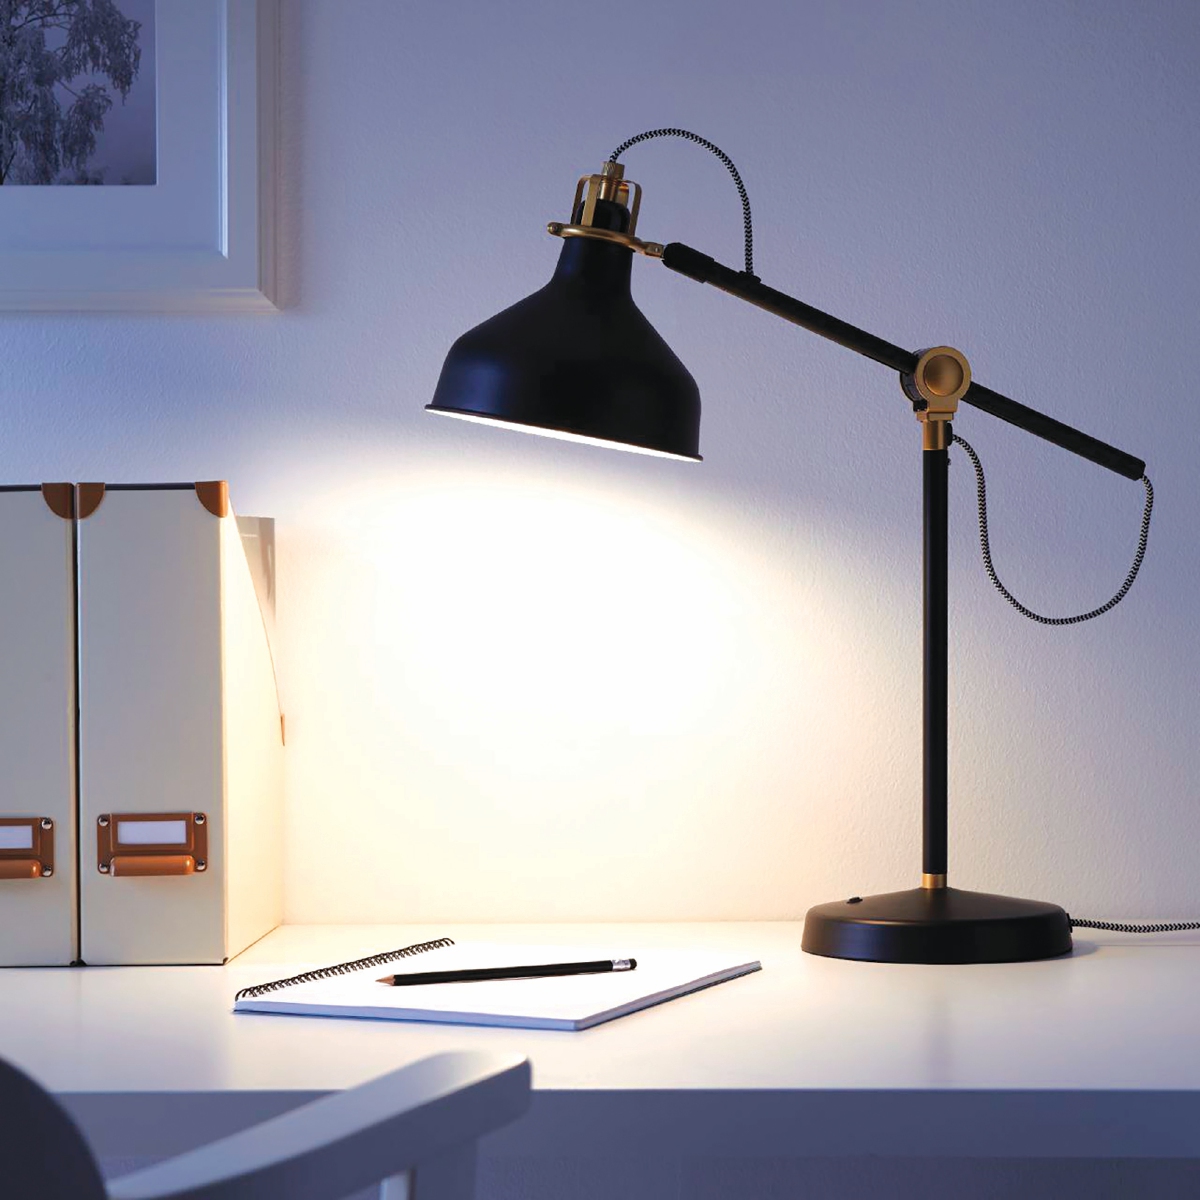 LAMPU meja dapat memberi pencahayaan minimum bagi ruang dalam bilik tidur.